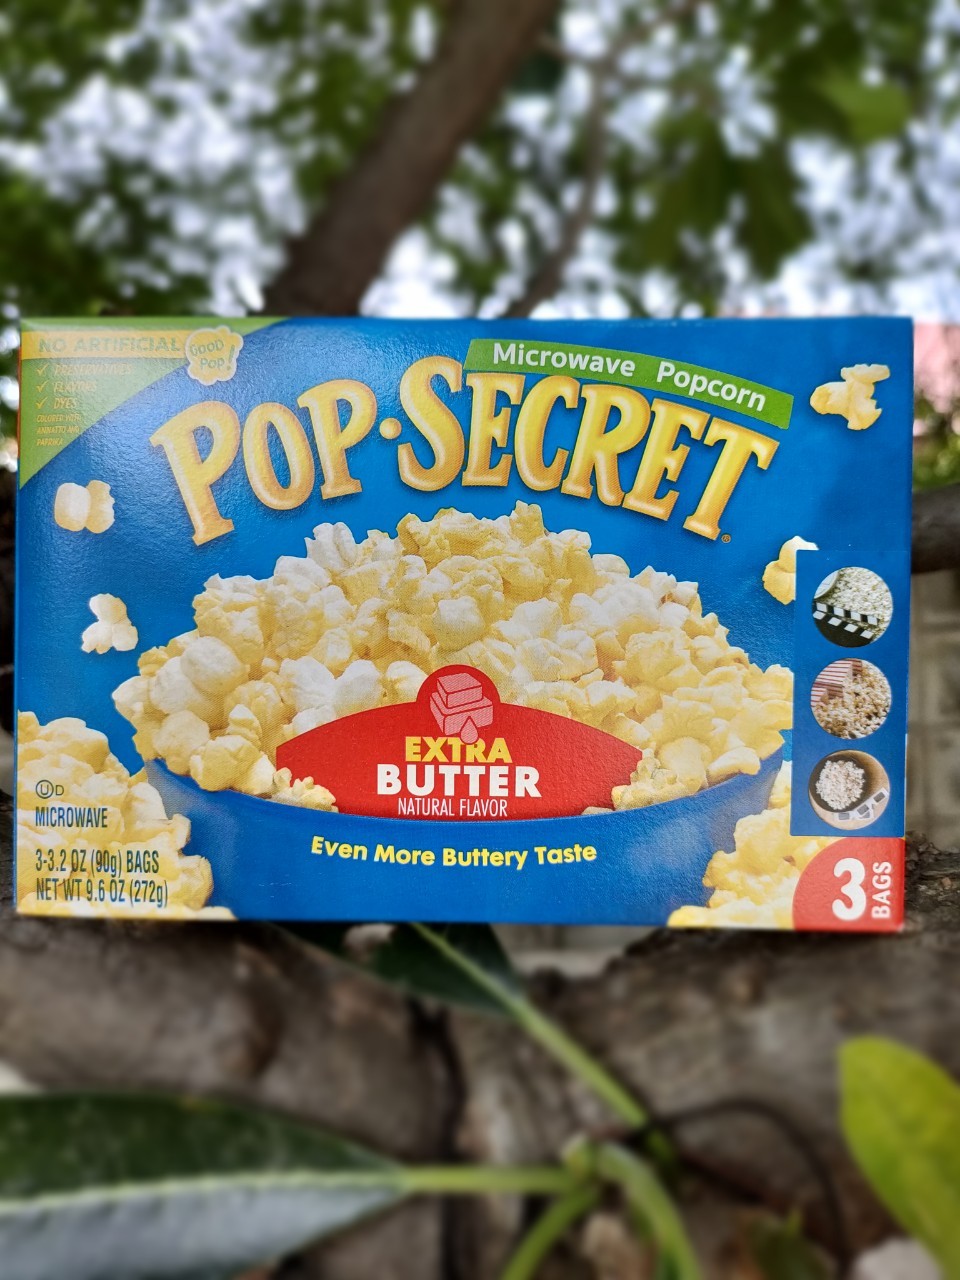 ป๊อปซีเคร็ท เมล็ดข้าวโพดดิบ สำหรับไมโครเวฟ รสเนยเข้มข้น🔥 149 บาท🔥  Pop Secret Microwave Popcorn Extra Butter ทำเองได้ง่ายๆ ที่บ้าน แค่เอาเข้าเครื่